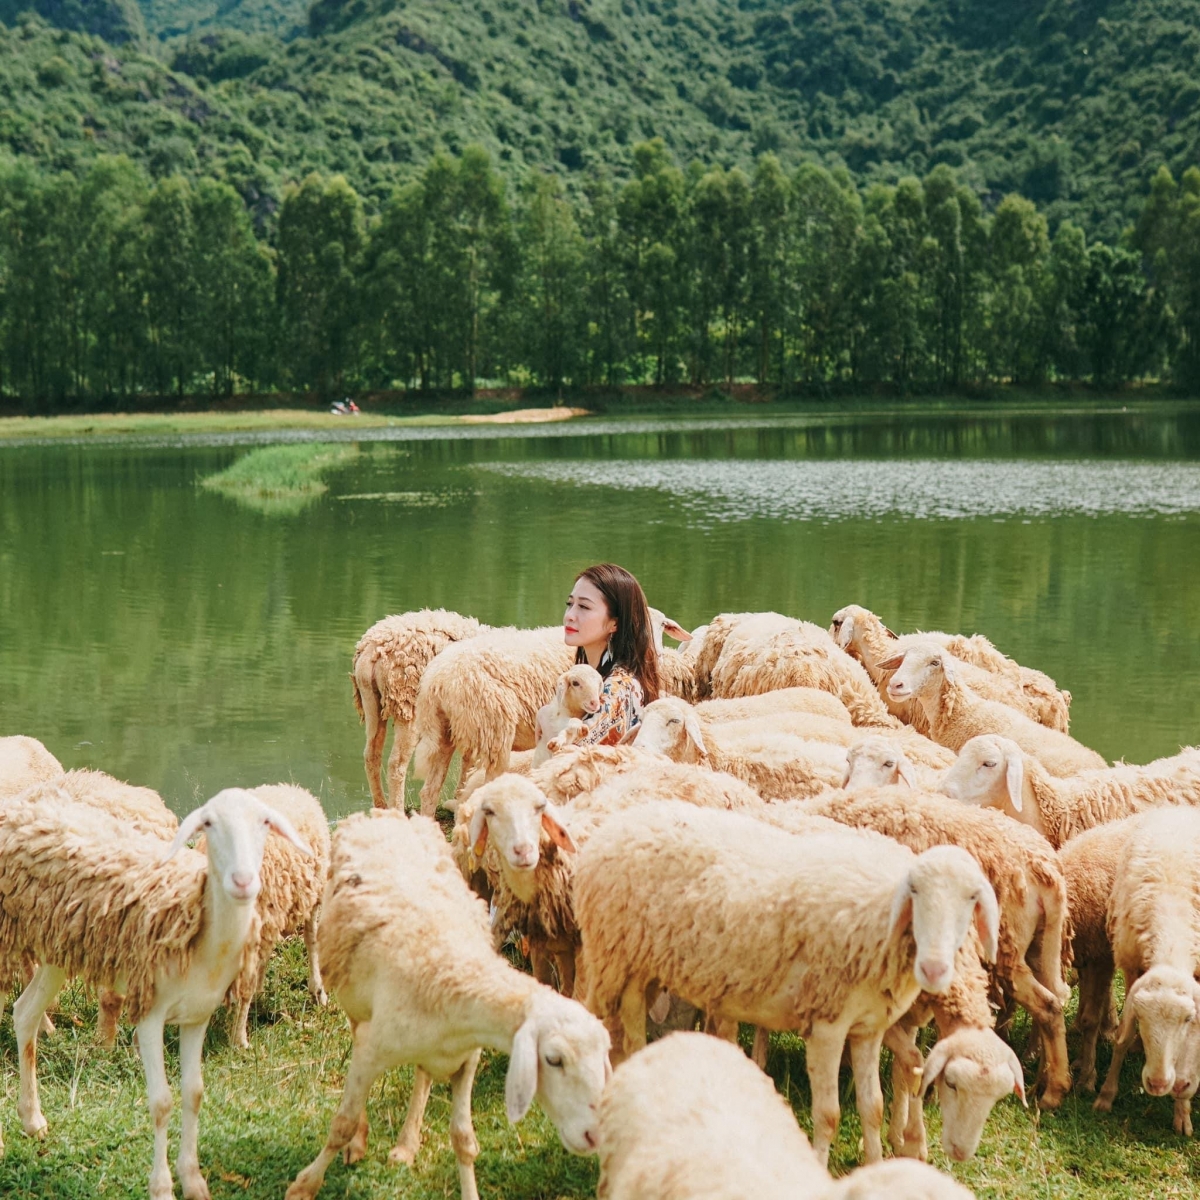 Dù chỉ mới xuất hiện trong thời gian gần đây nhưng cánh đồng cừu ở Ninh Bình nhanh chóng chiếm trọn trái tim của biết bao tín đồ sống ảo. Cừu ở đây được chăn thả dọc theo triền đê, chúng đi lại tự do, thong thả ăn cỏ, tạo nên một bức tranh thiên nhiên đẹp và mộng mơ vô cùng.